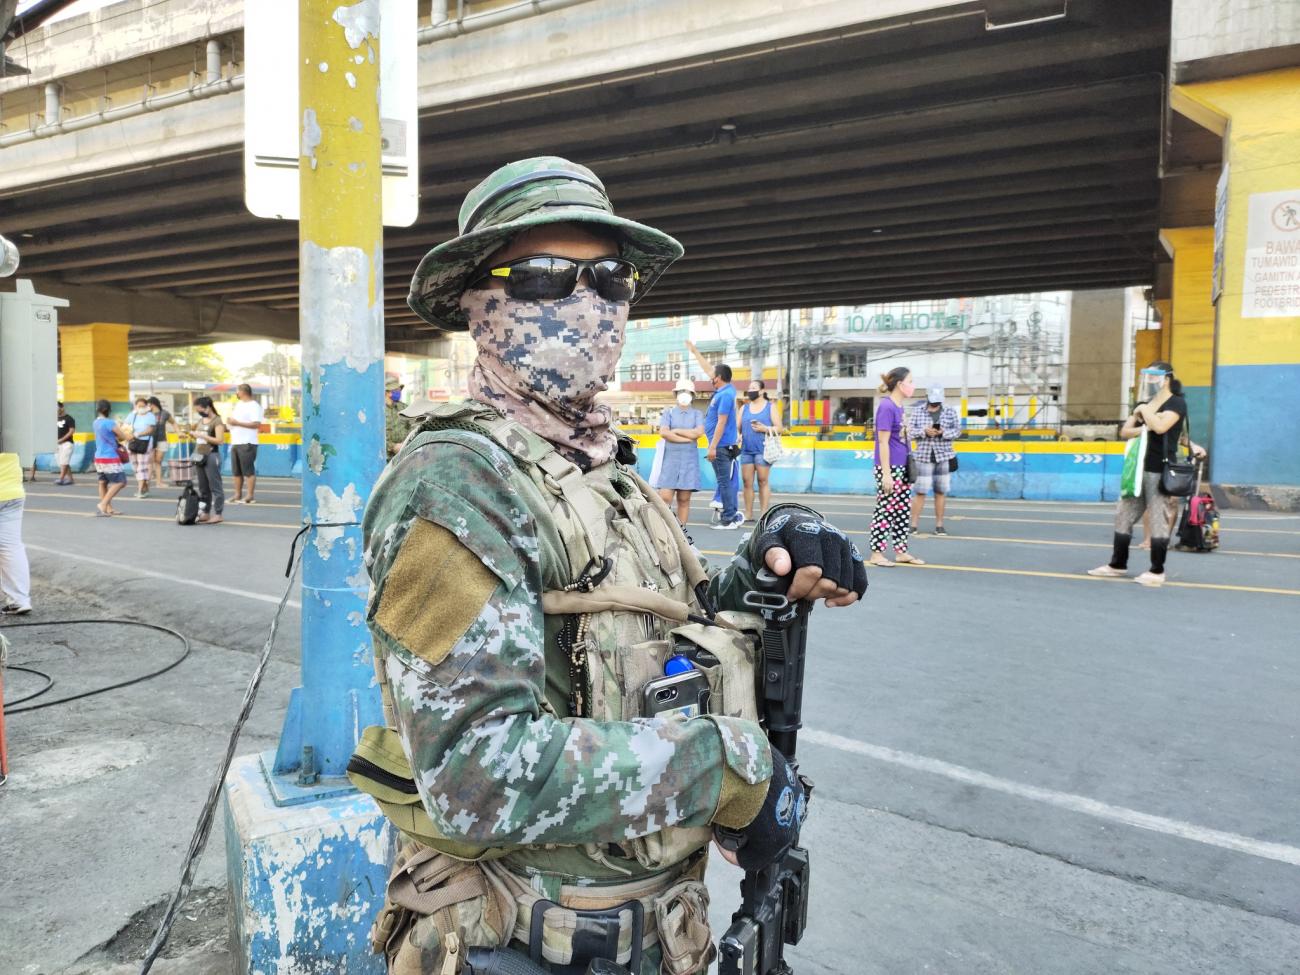 Un soldado está parado en una calle con un arma, usando un tapabocas